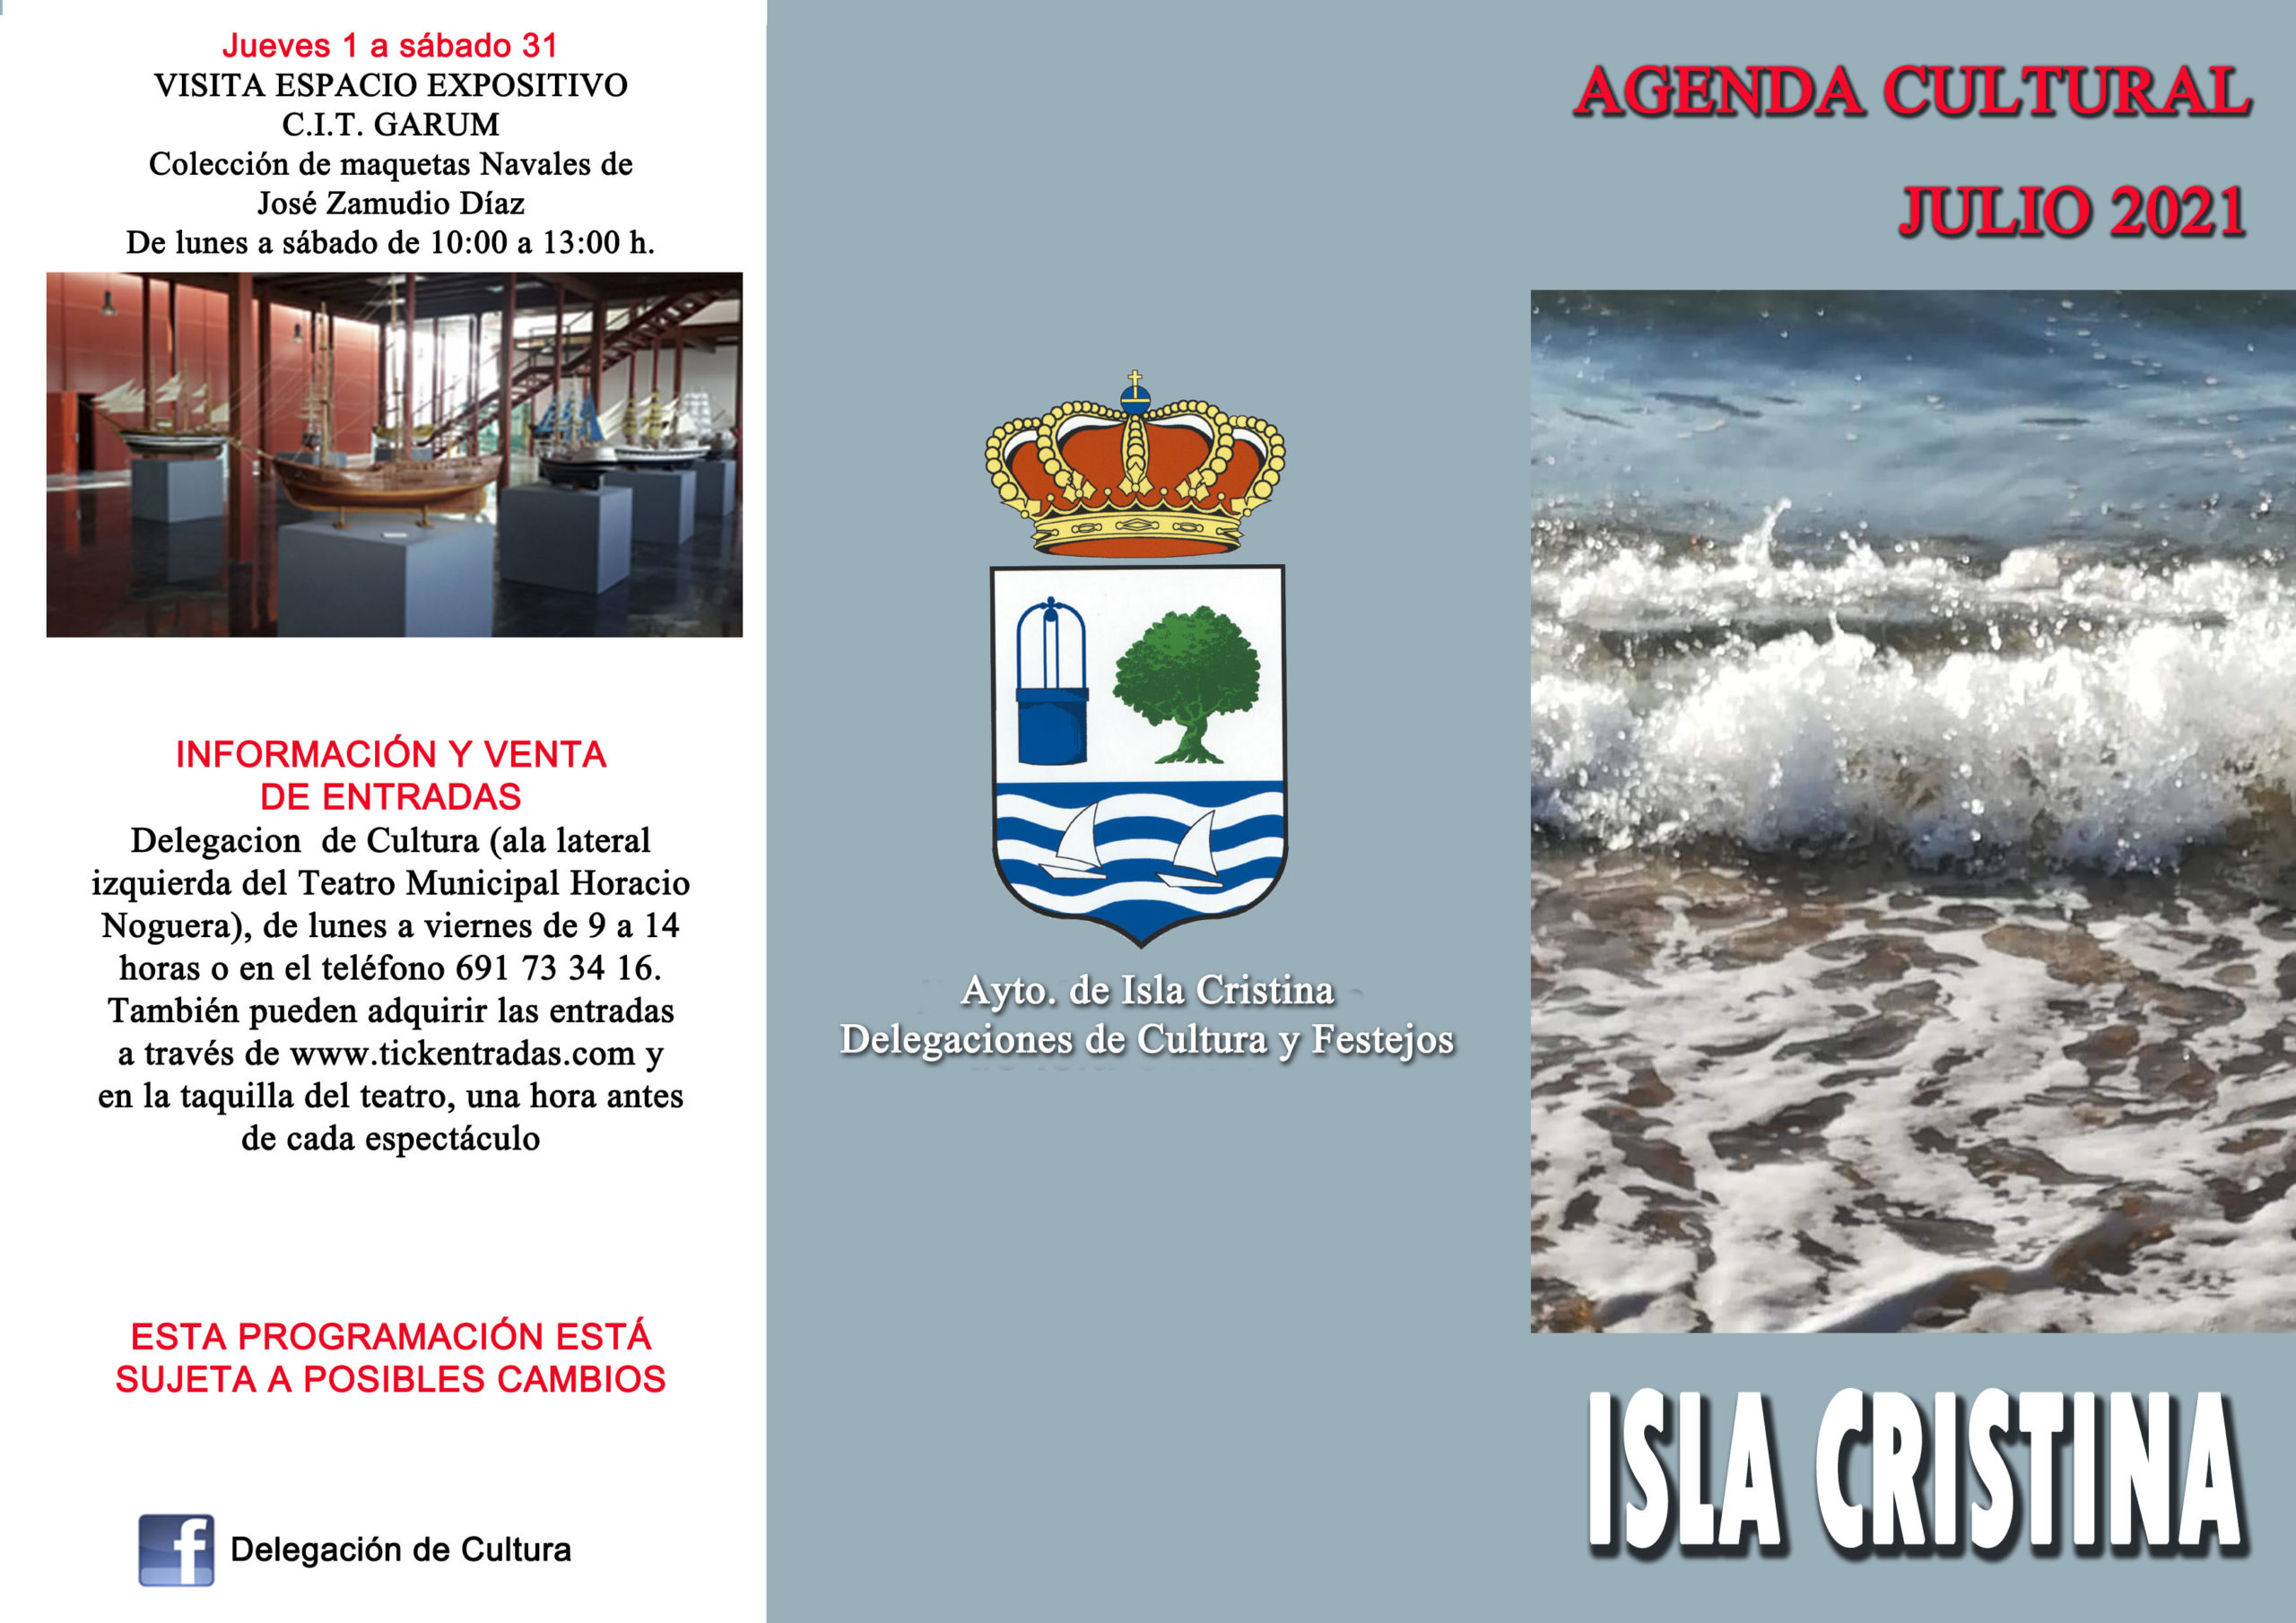 Agenda Cultural Isla Cristina Julio 2021